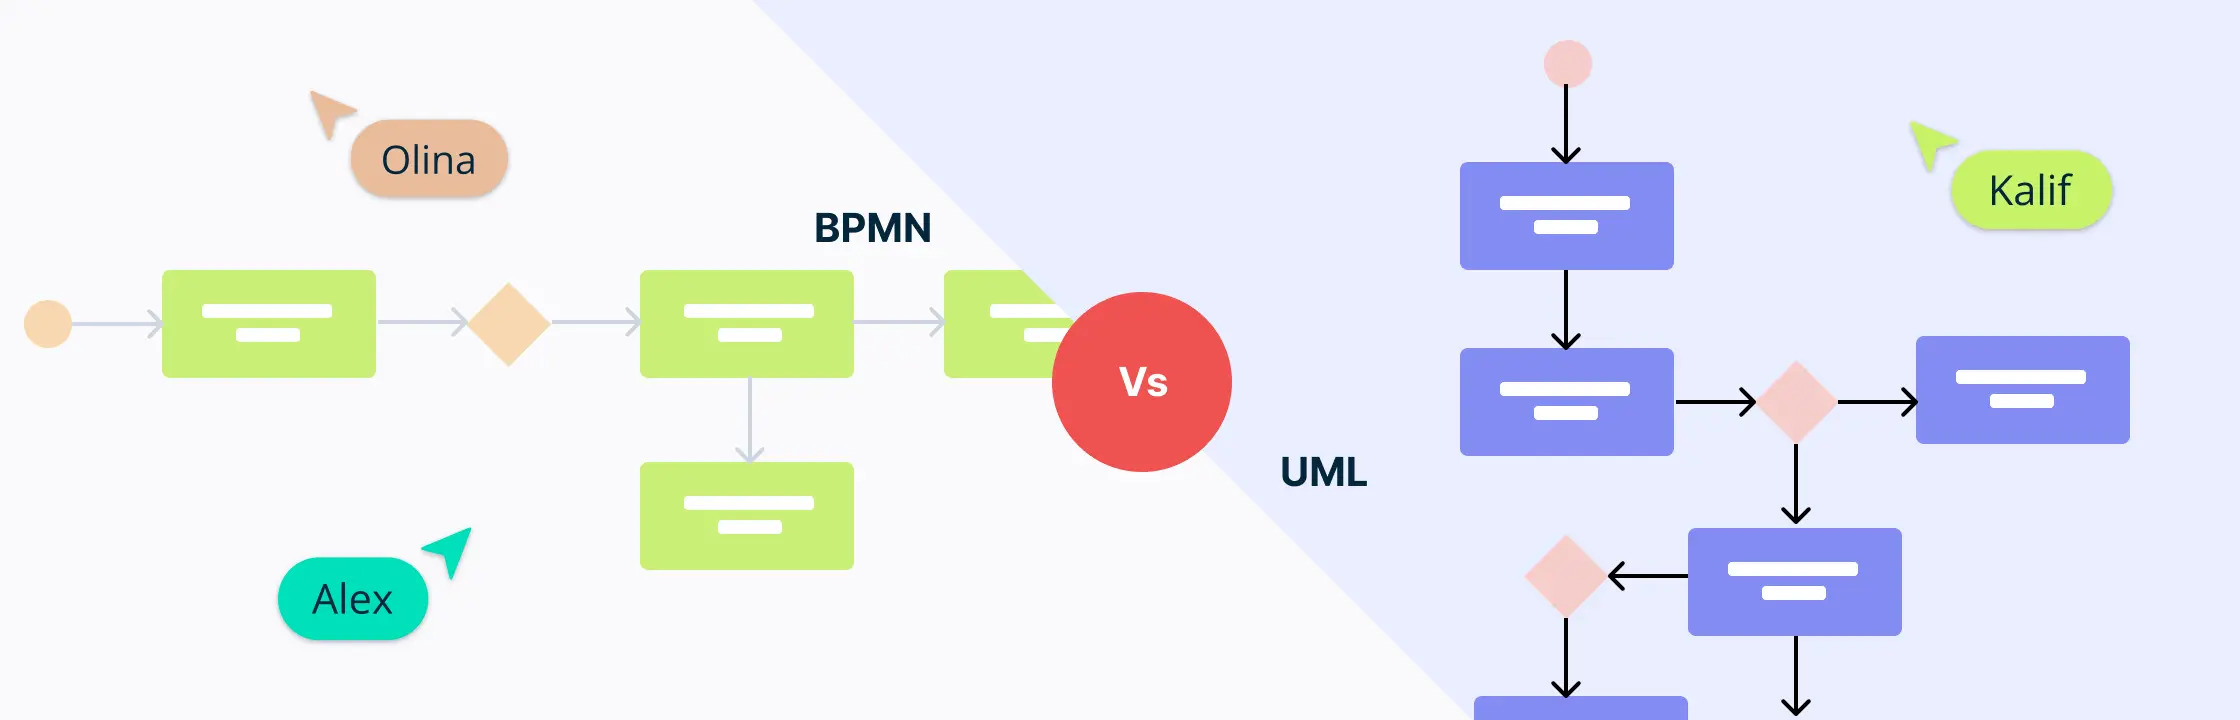 BPMN và UML trong mô hình hóa kinh doanh